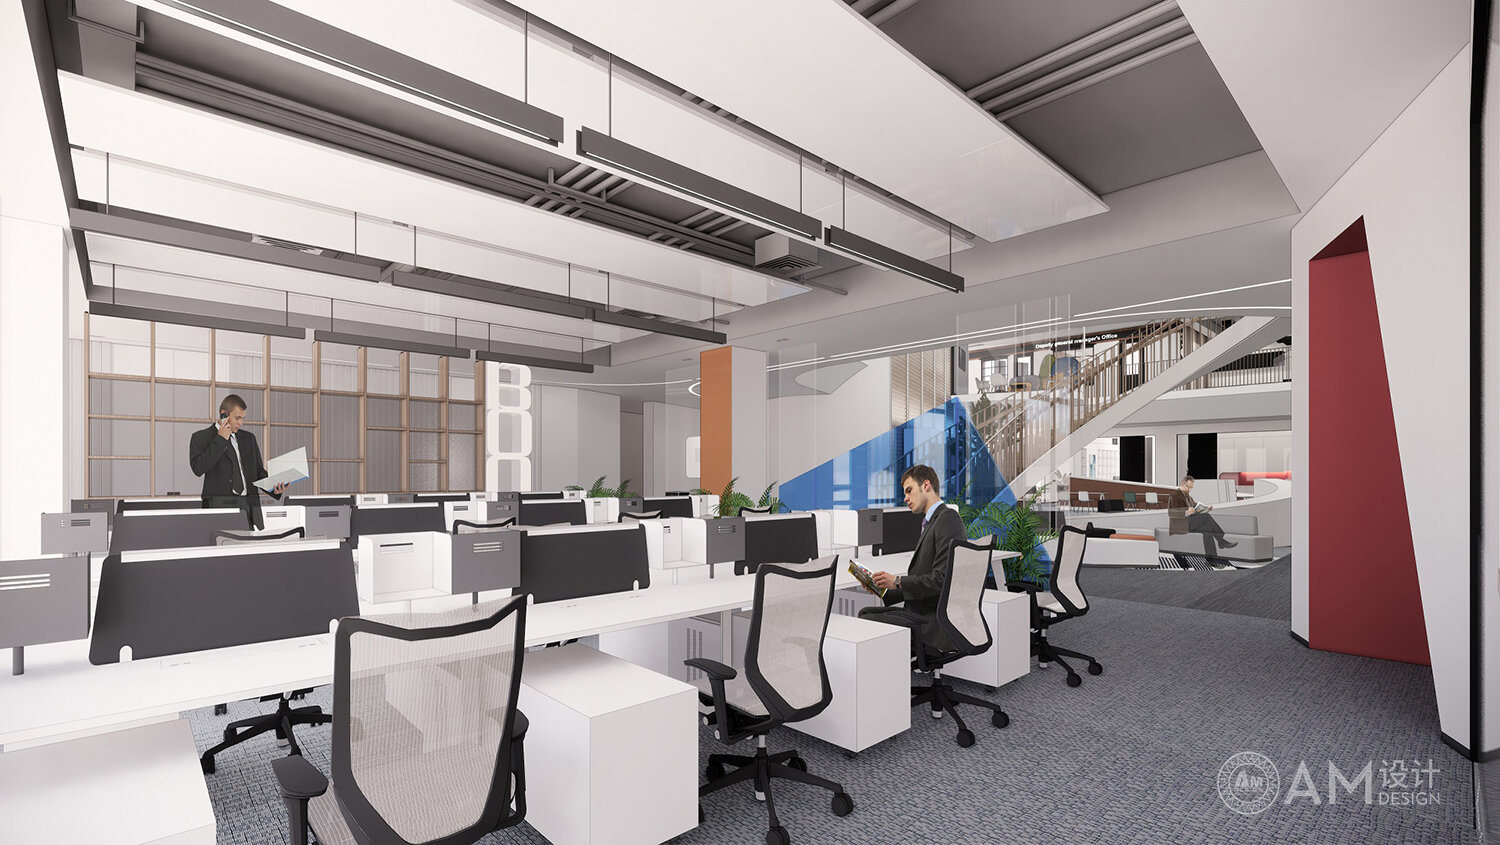 Design of five floor comprehensive office area